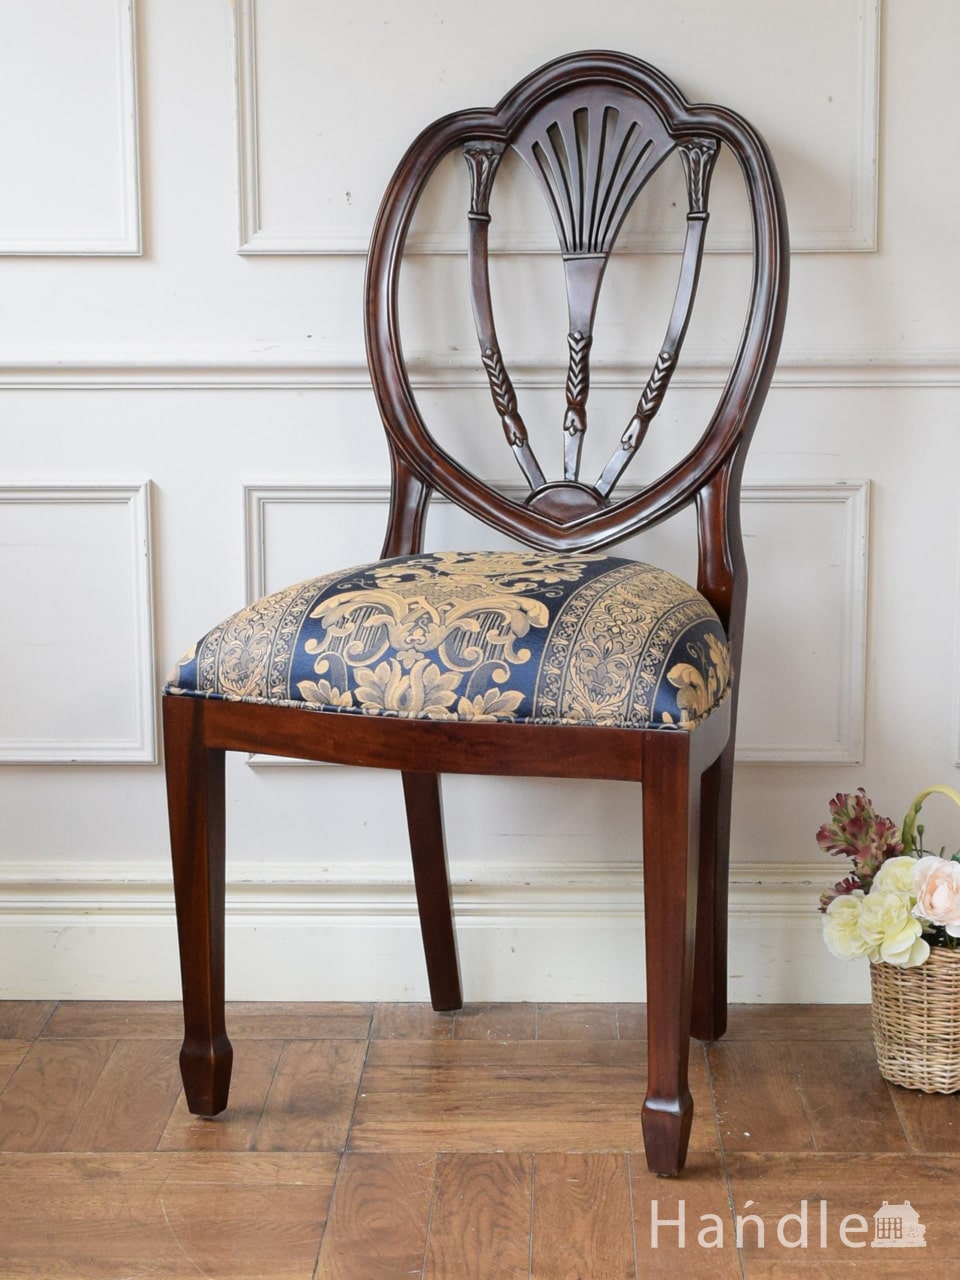 アンティーク風のおしゃれな椅子、背もたれの装飾が美しいヘップルホワイトチェア (y-231-c)